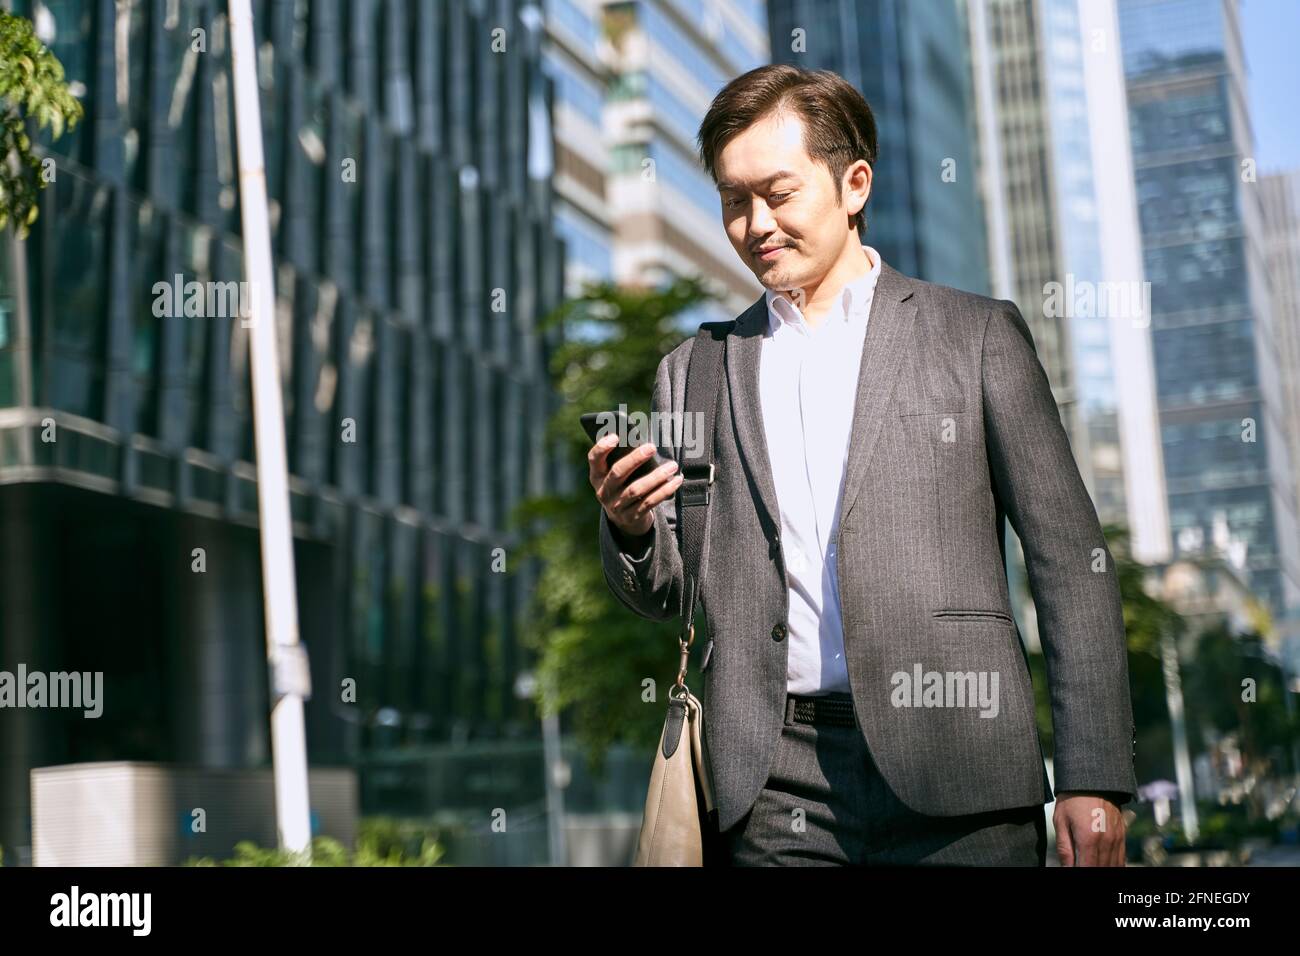 asiatischer Büroangestellter mit weißem Kragen, der während des Telefonanschlosses auf das Mobiltelefon schaut Zu Fuß zum Finanzviertel der modernen Stadt zu arbeiten Stockfoto